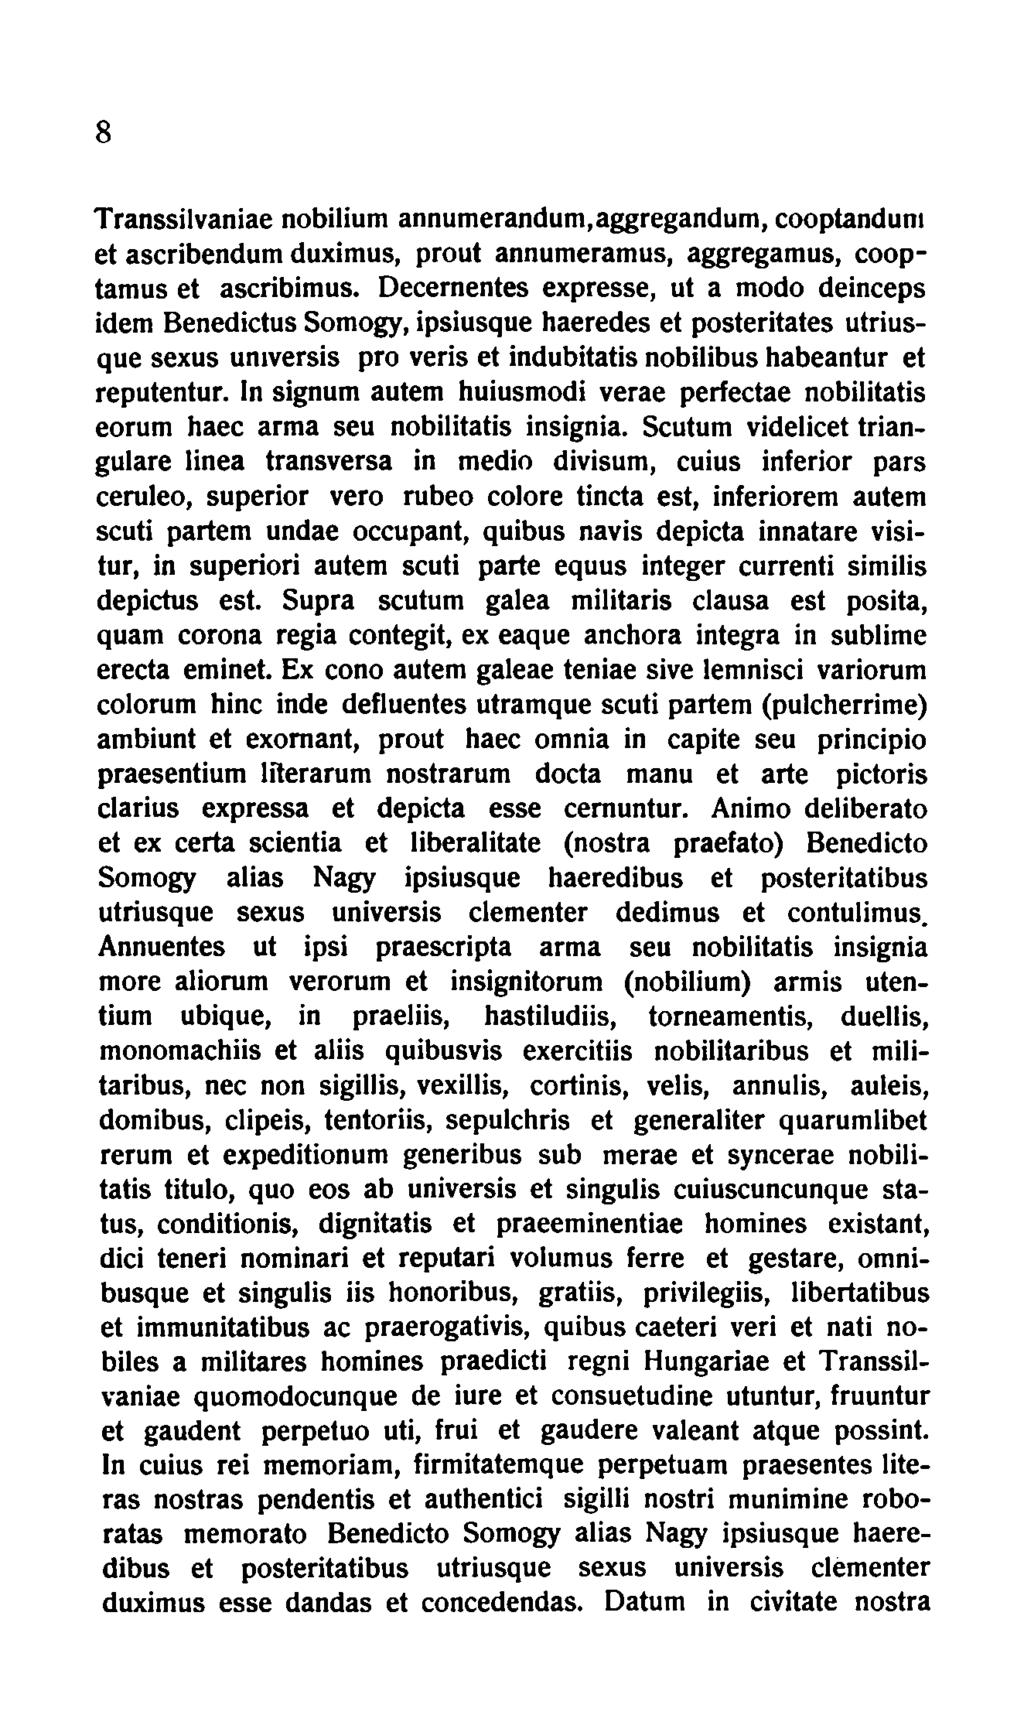 8 Transsilvaniae nobilium annumerandum,aggregandum, cooptandum et ascribendum duximus, prout annumeramus, aggregamus, cooptamus et ascribimus.